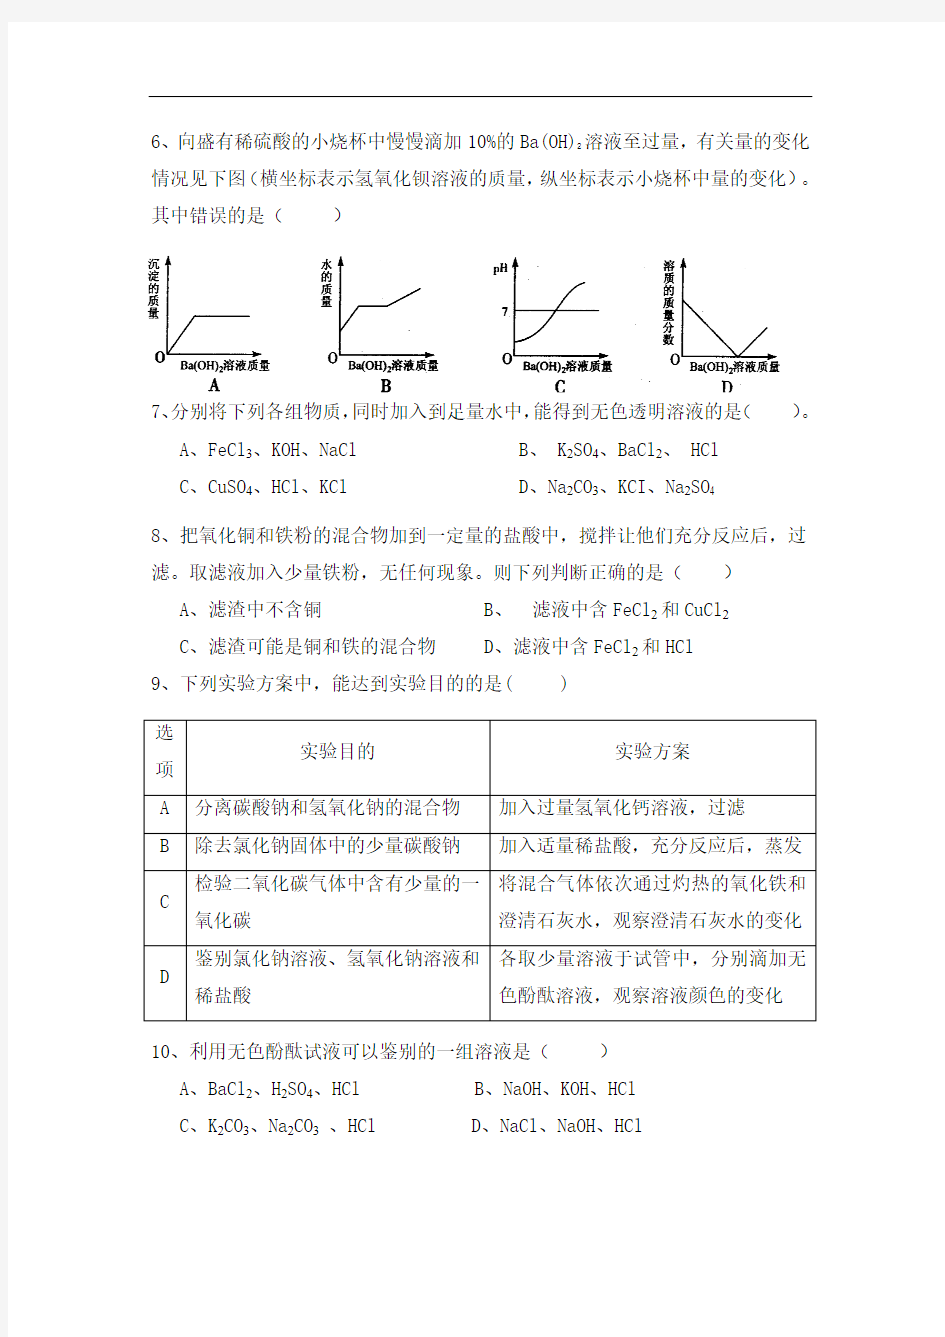 2016年上海天原杯初中化学竞赛初赛试题